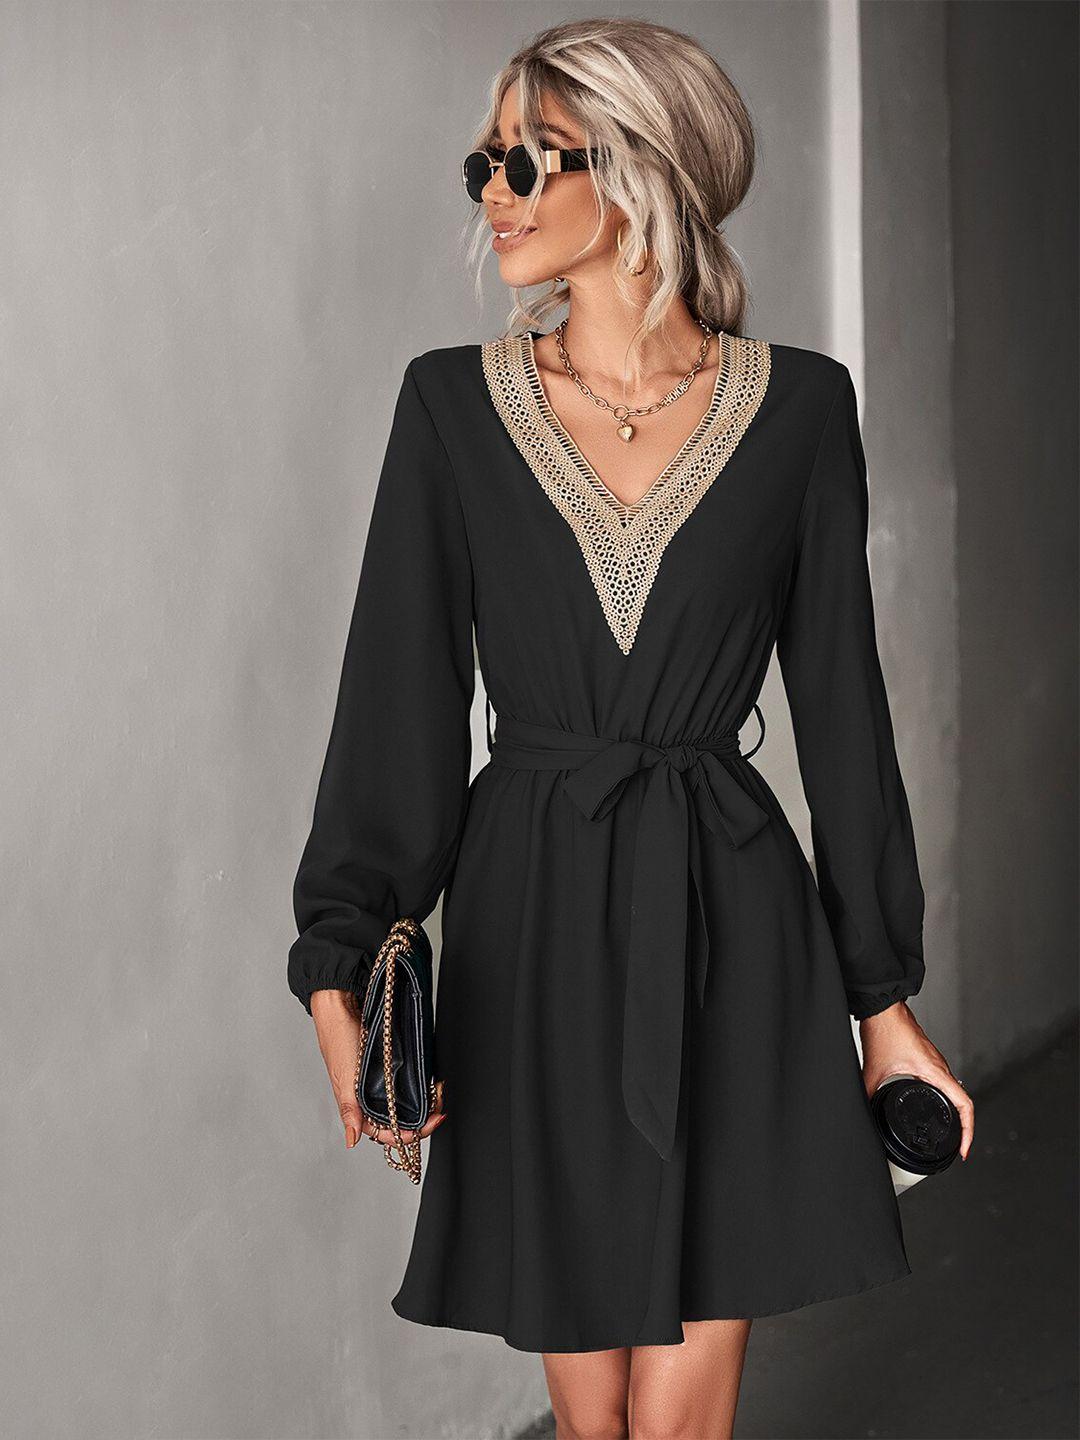 stylecast black embellished v-neck fit & flare dress